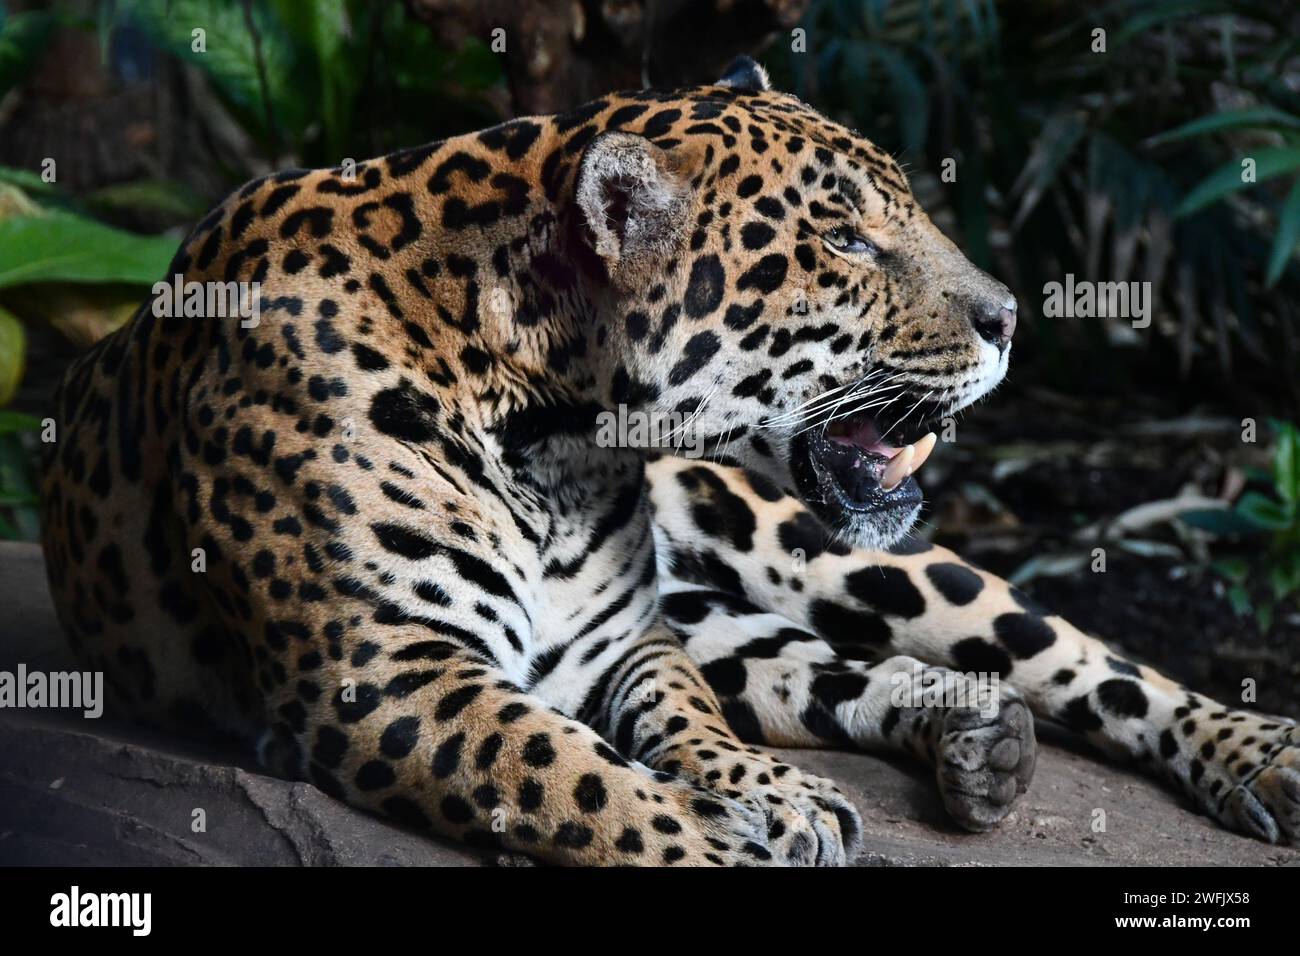 Jaguar sud-américaine Banque D'Images